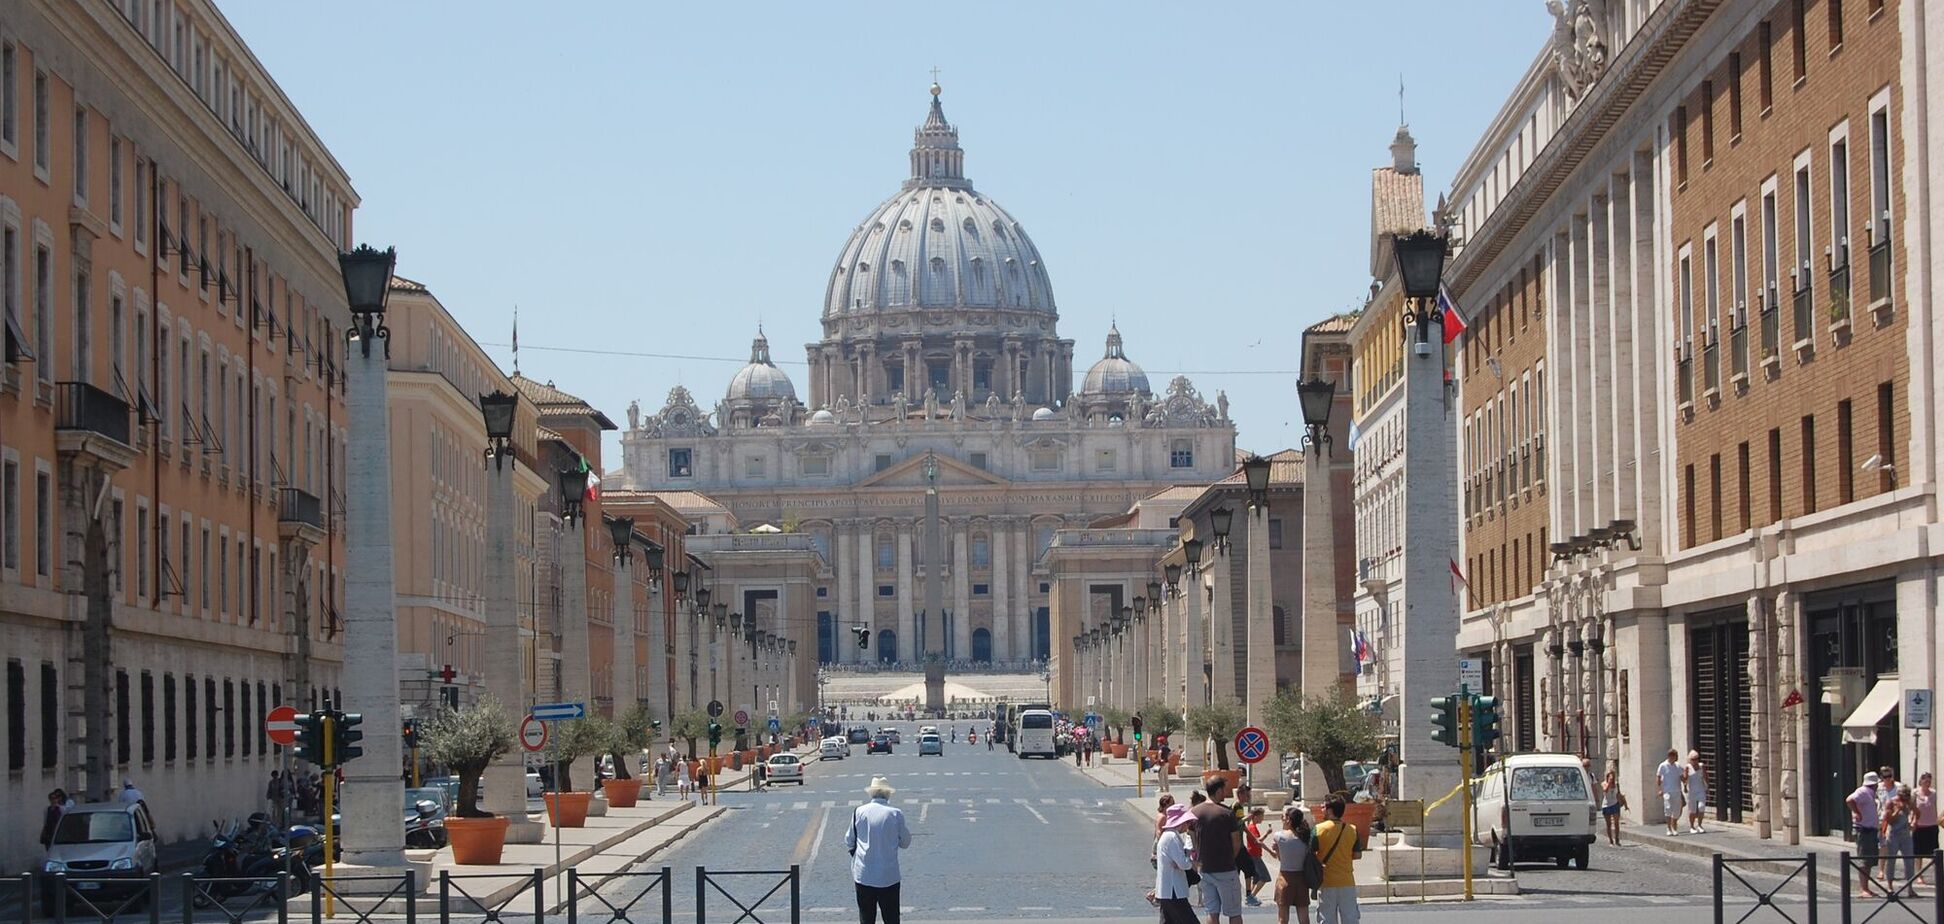 Всего в Ватикане зафиксирован около 10 случаев заражения COVID-19